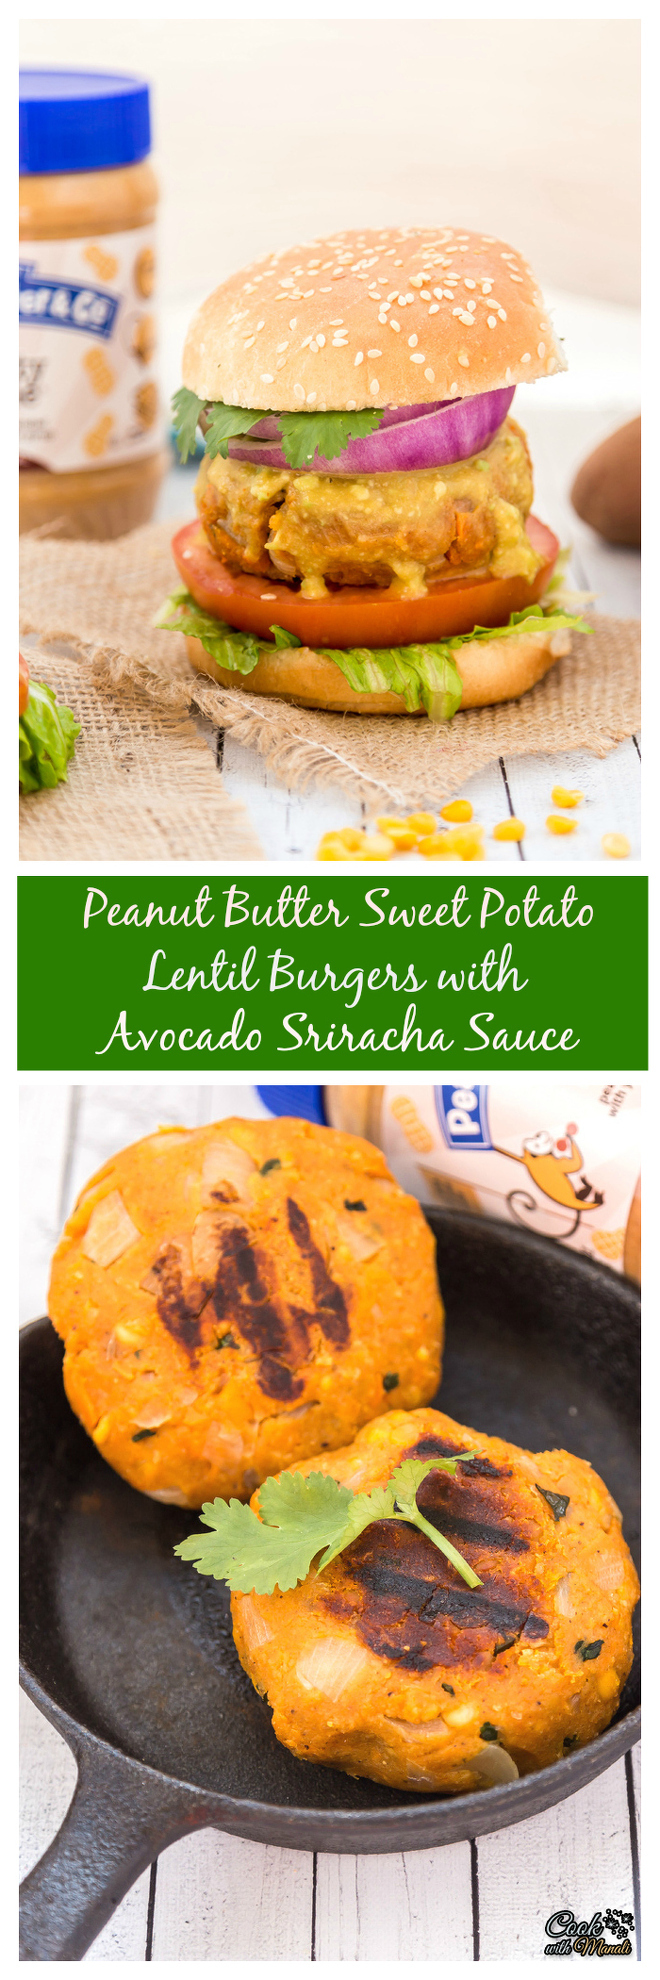 Peanut Butter Sweet Potato Lentil Burgers with Sriracha Sauce collage-nocwm